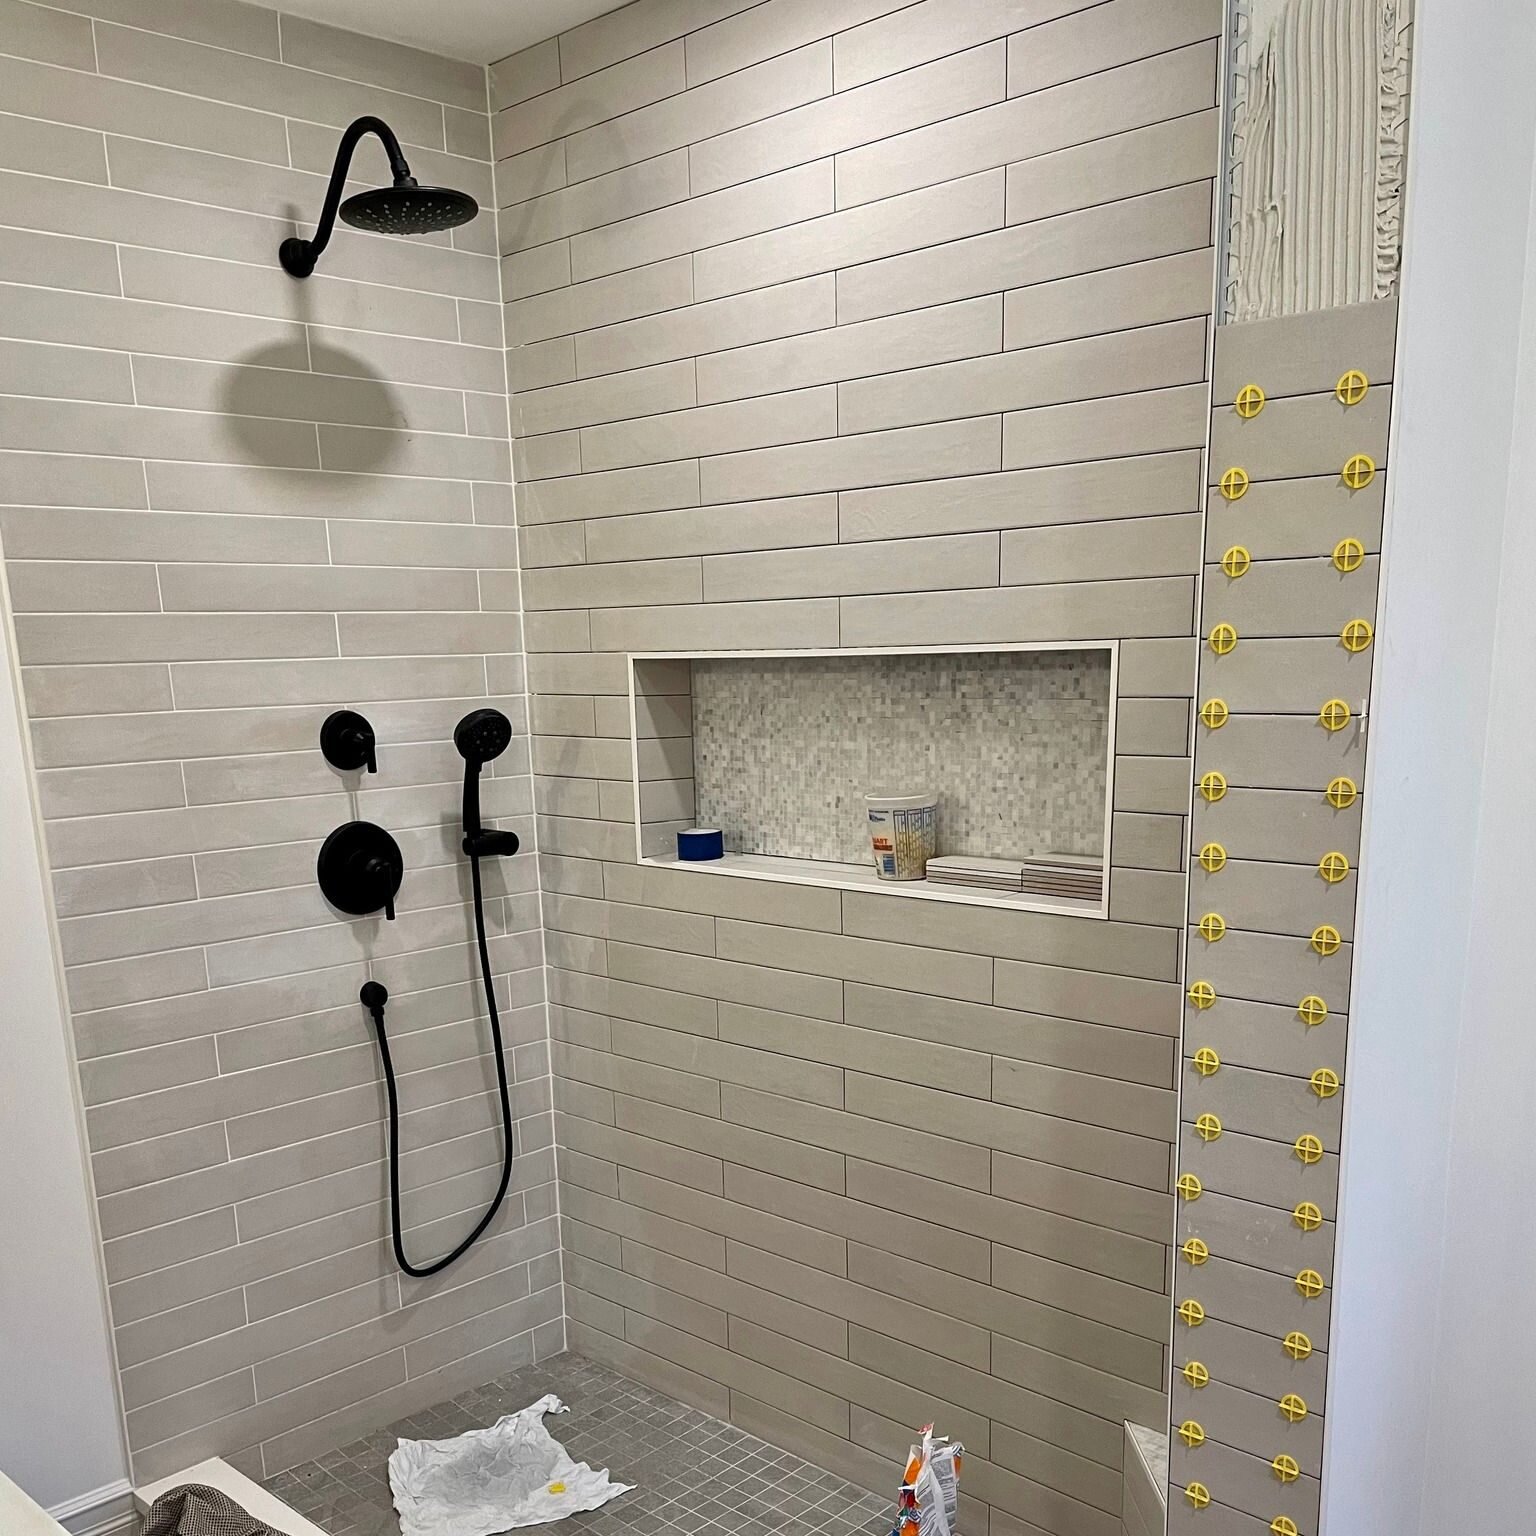 Sneak peek of this beautiful bathroom transformation #remodeling #tilework  #niantic #bathroom #bathroomideas #tiledesign